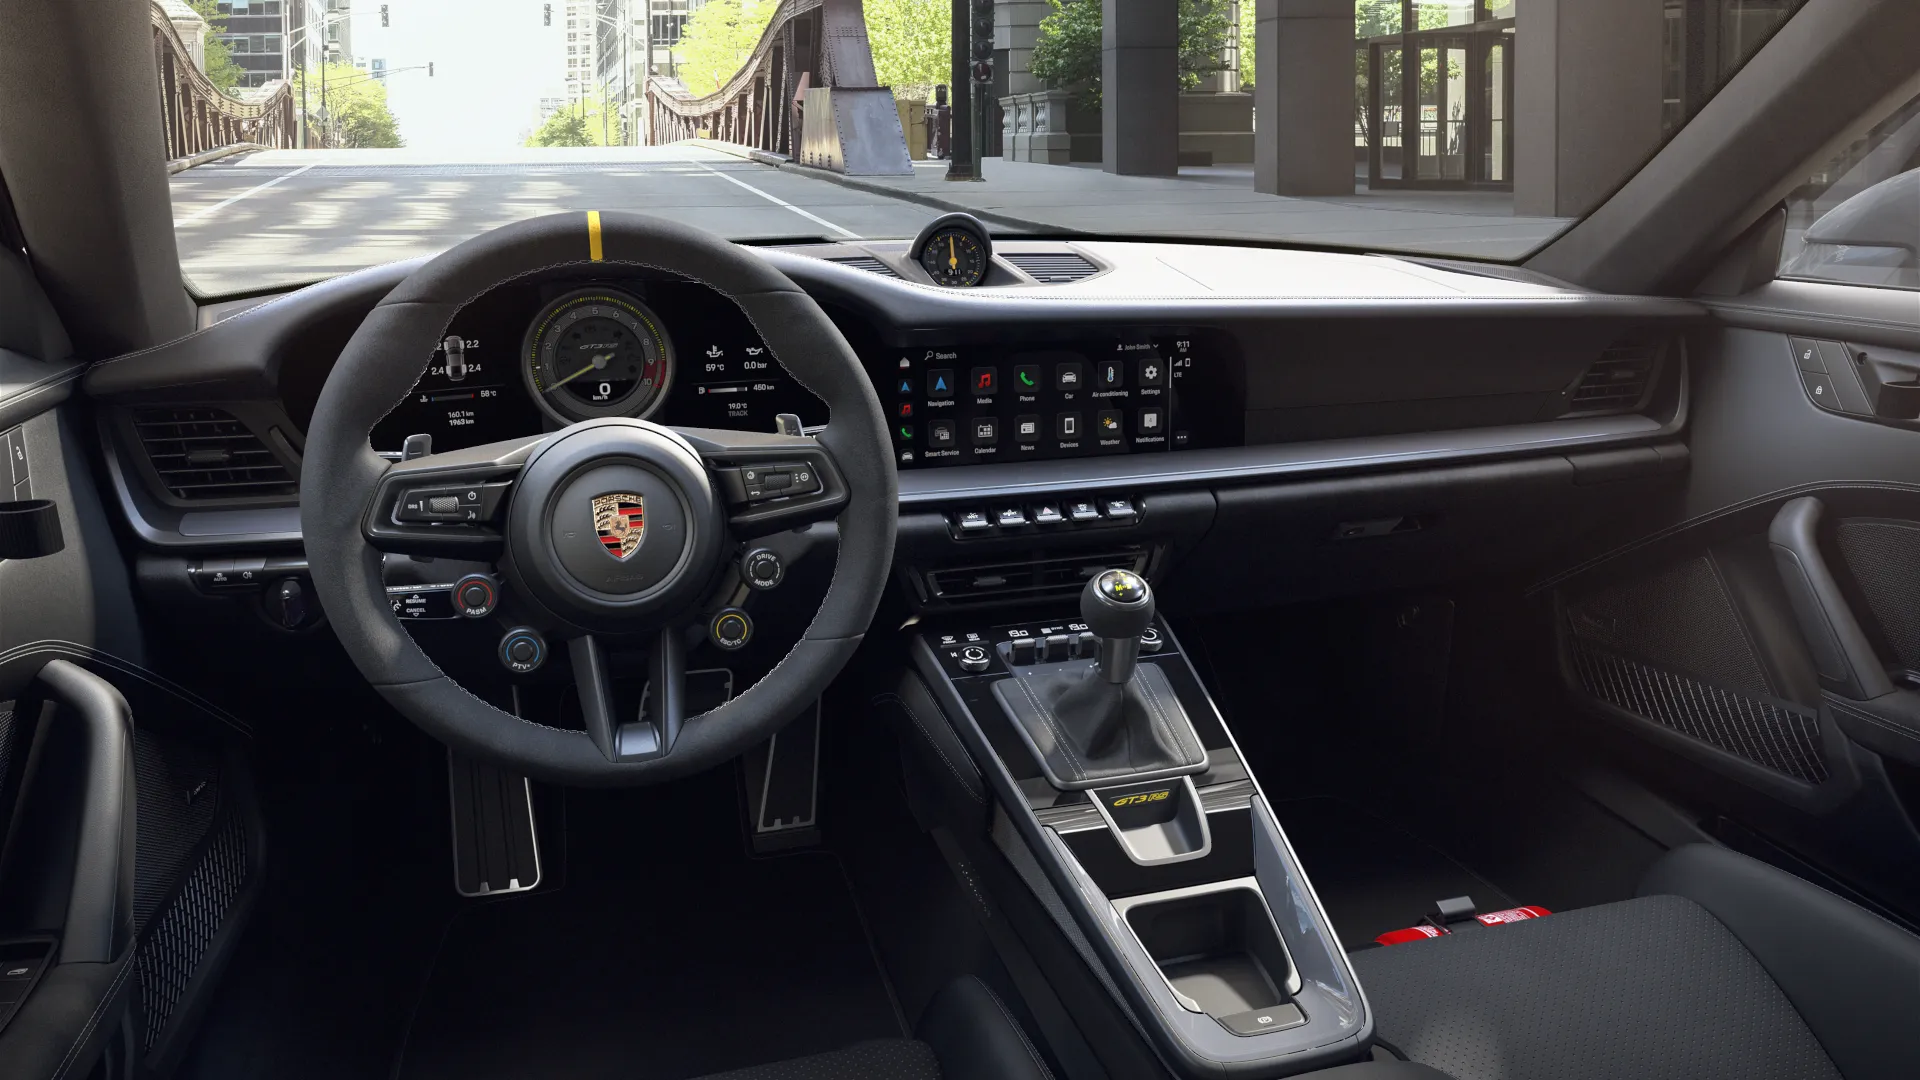 Innenansicht des 911 GT3 RS